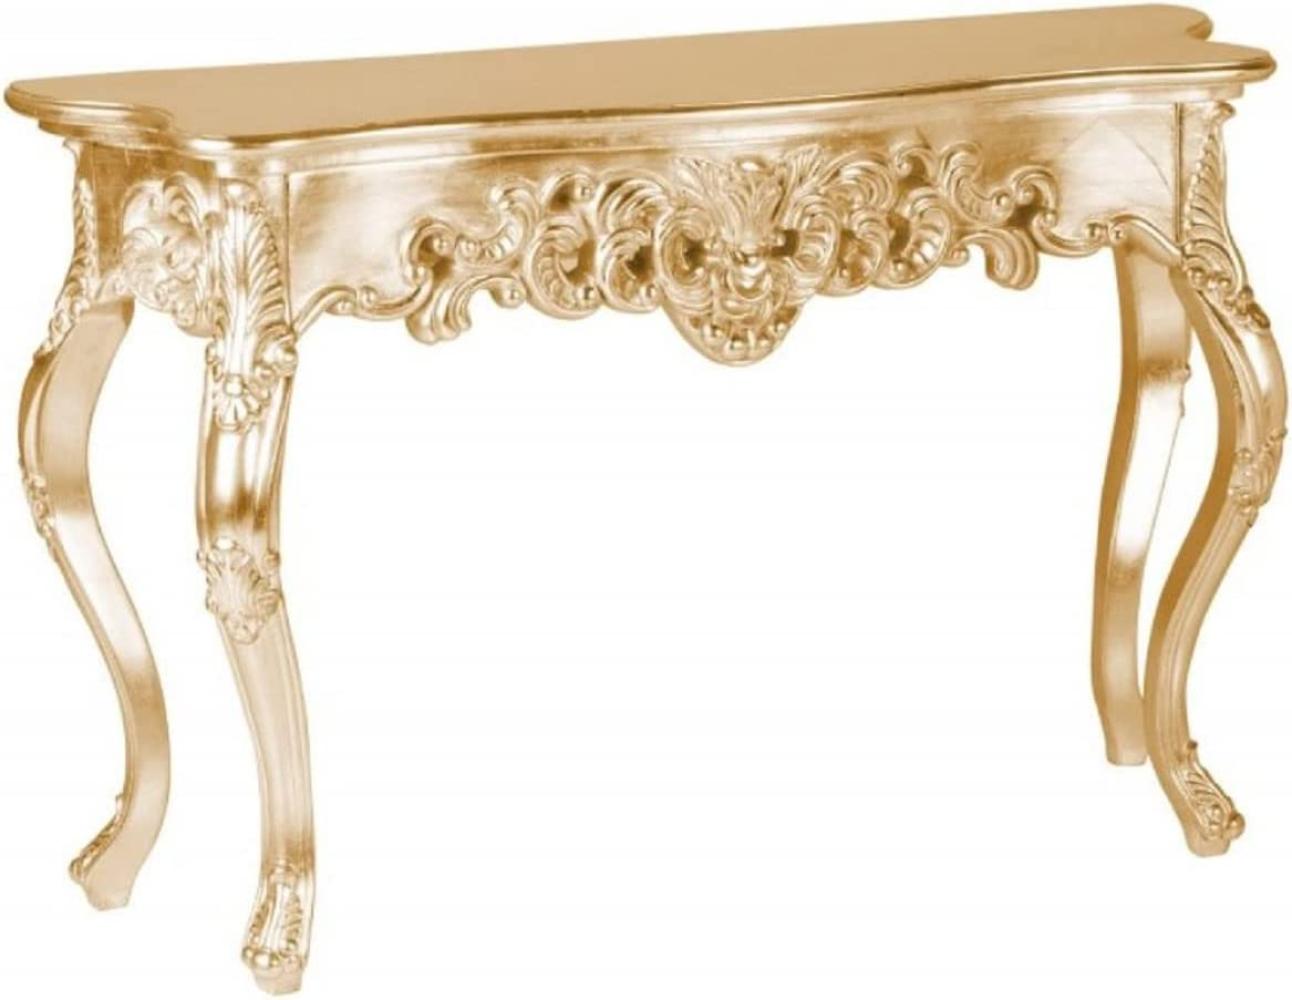 Casa Padrino Barock Konsole Gold - Handgefertigter Konsolentisch mit edlen Verzierungen - Barock Möbel Bild 1